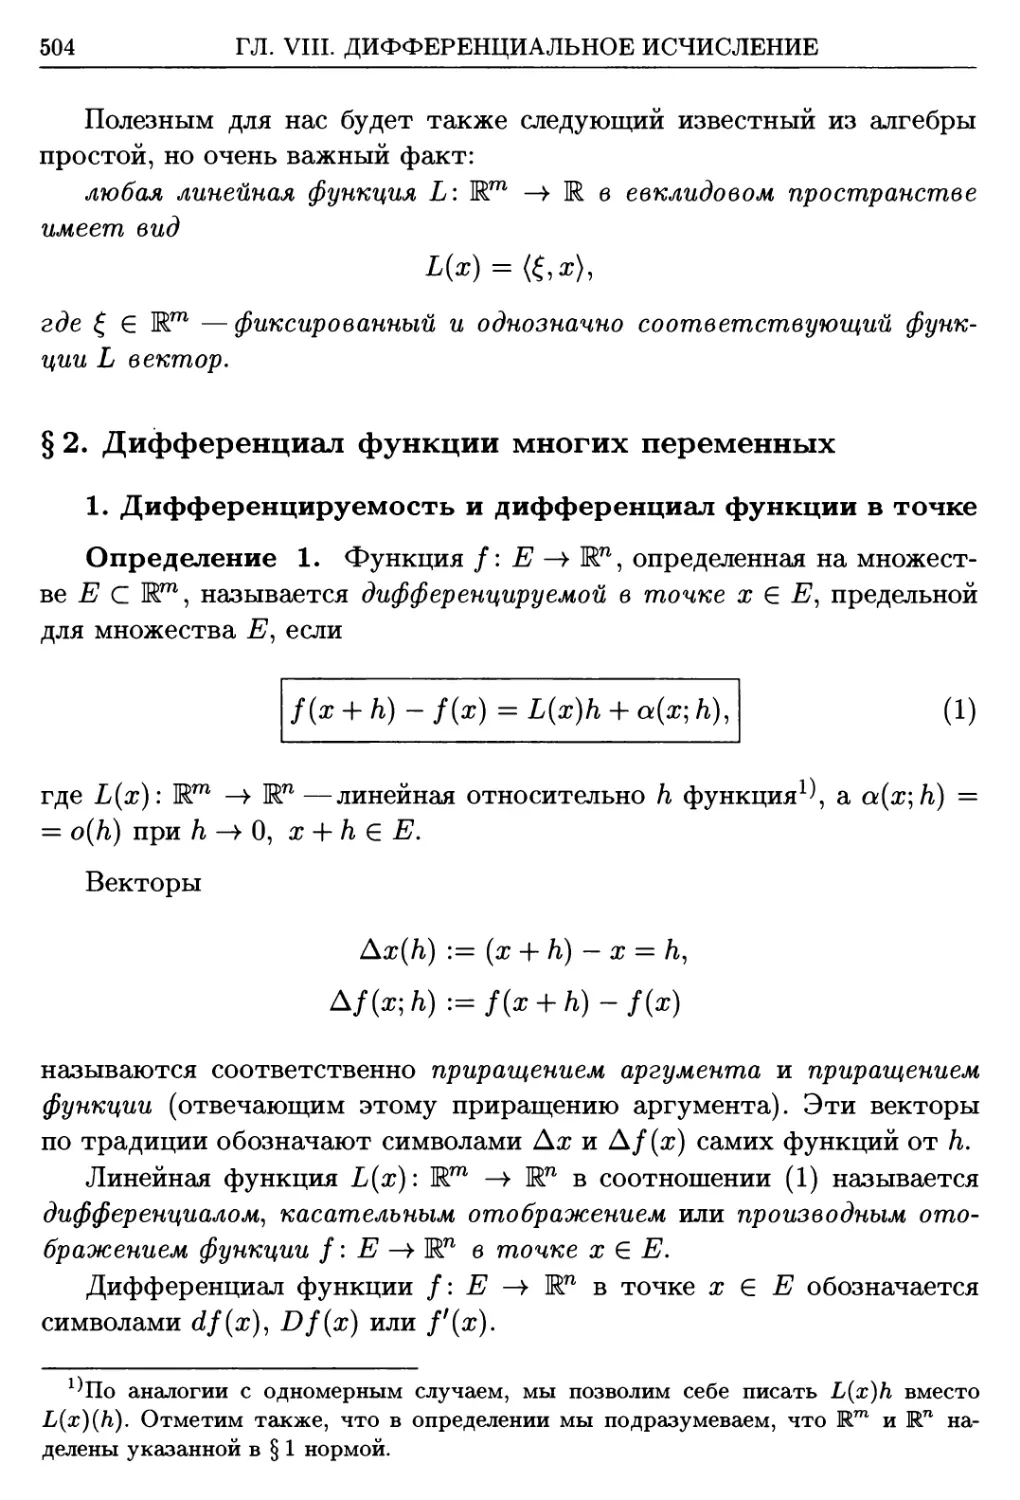 §2. Дифференциал функции многих переменных